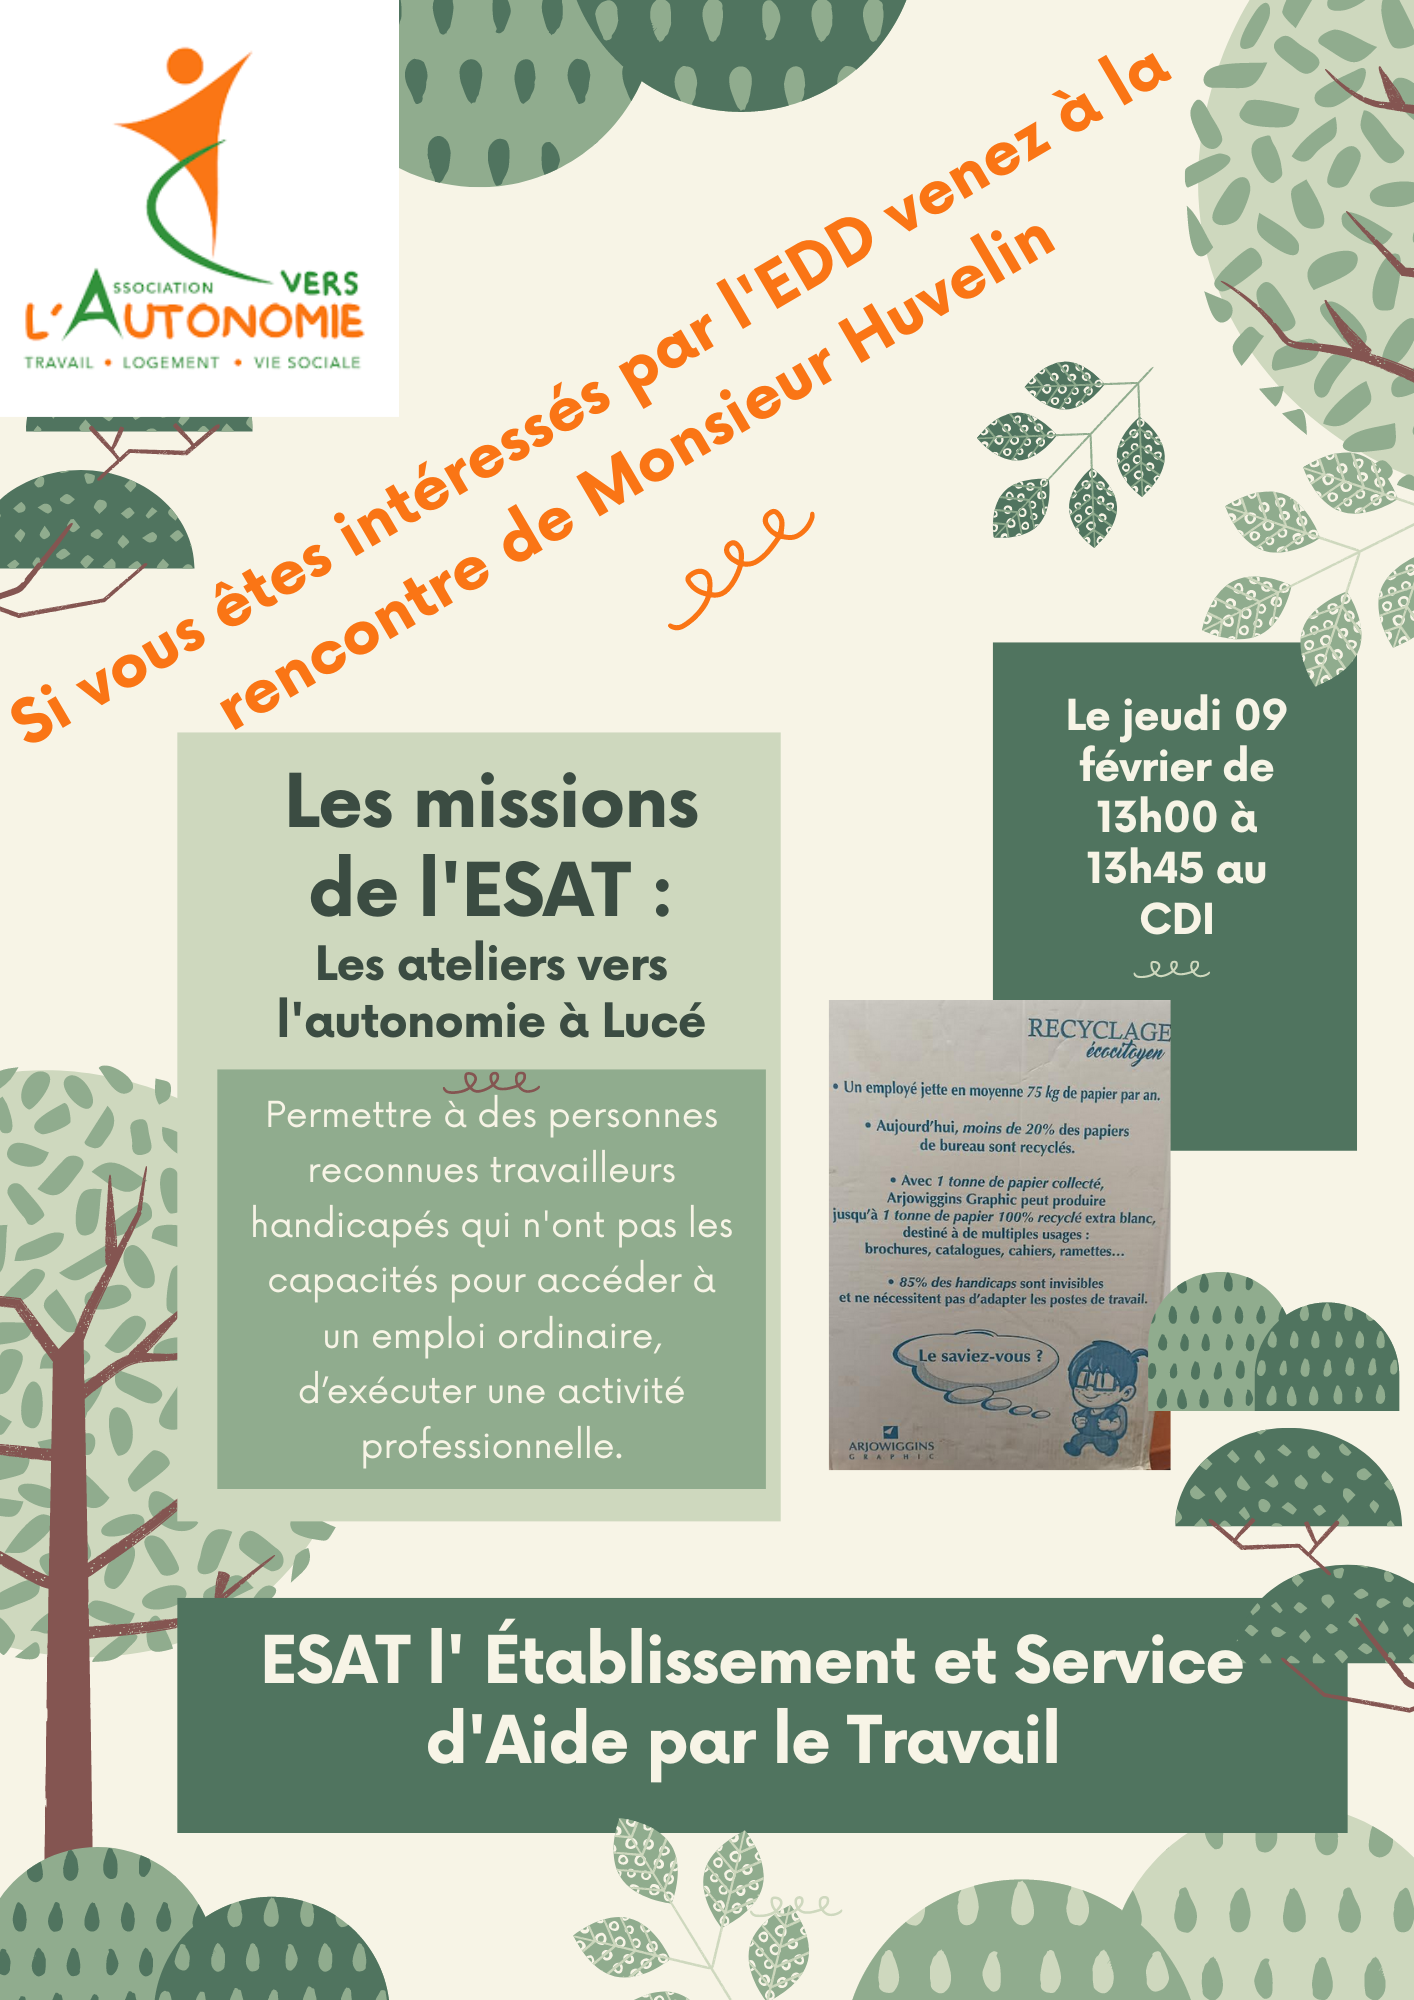 Partenariat avec L'ESAT de Lucé pour le recyclage de notre papier